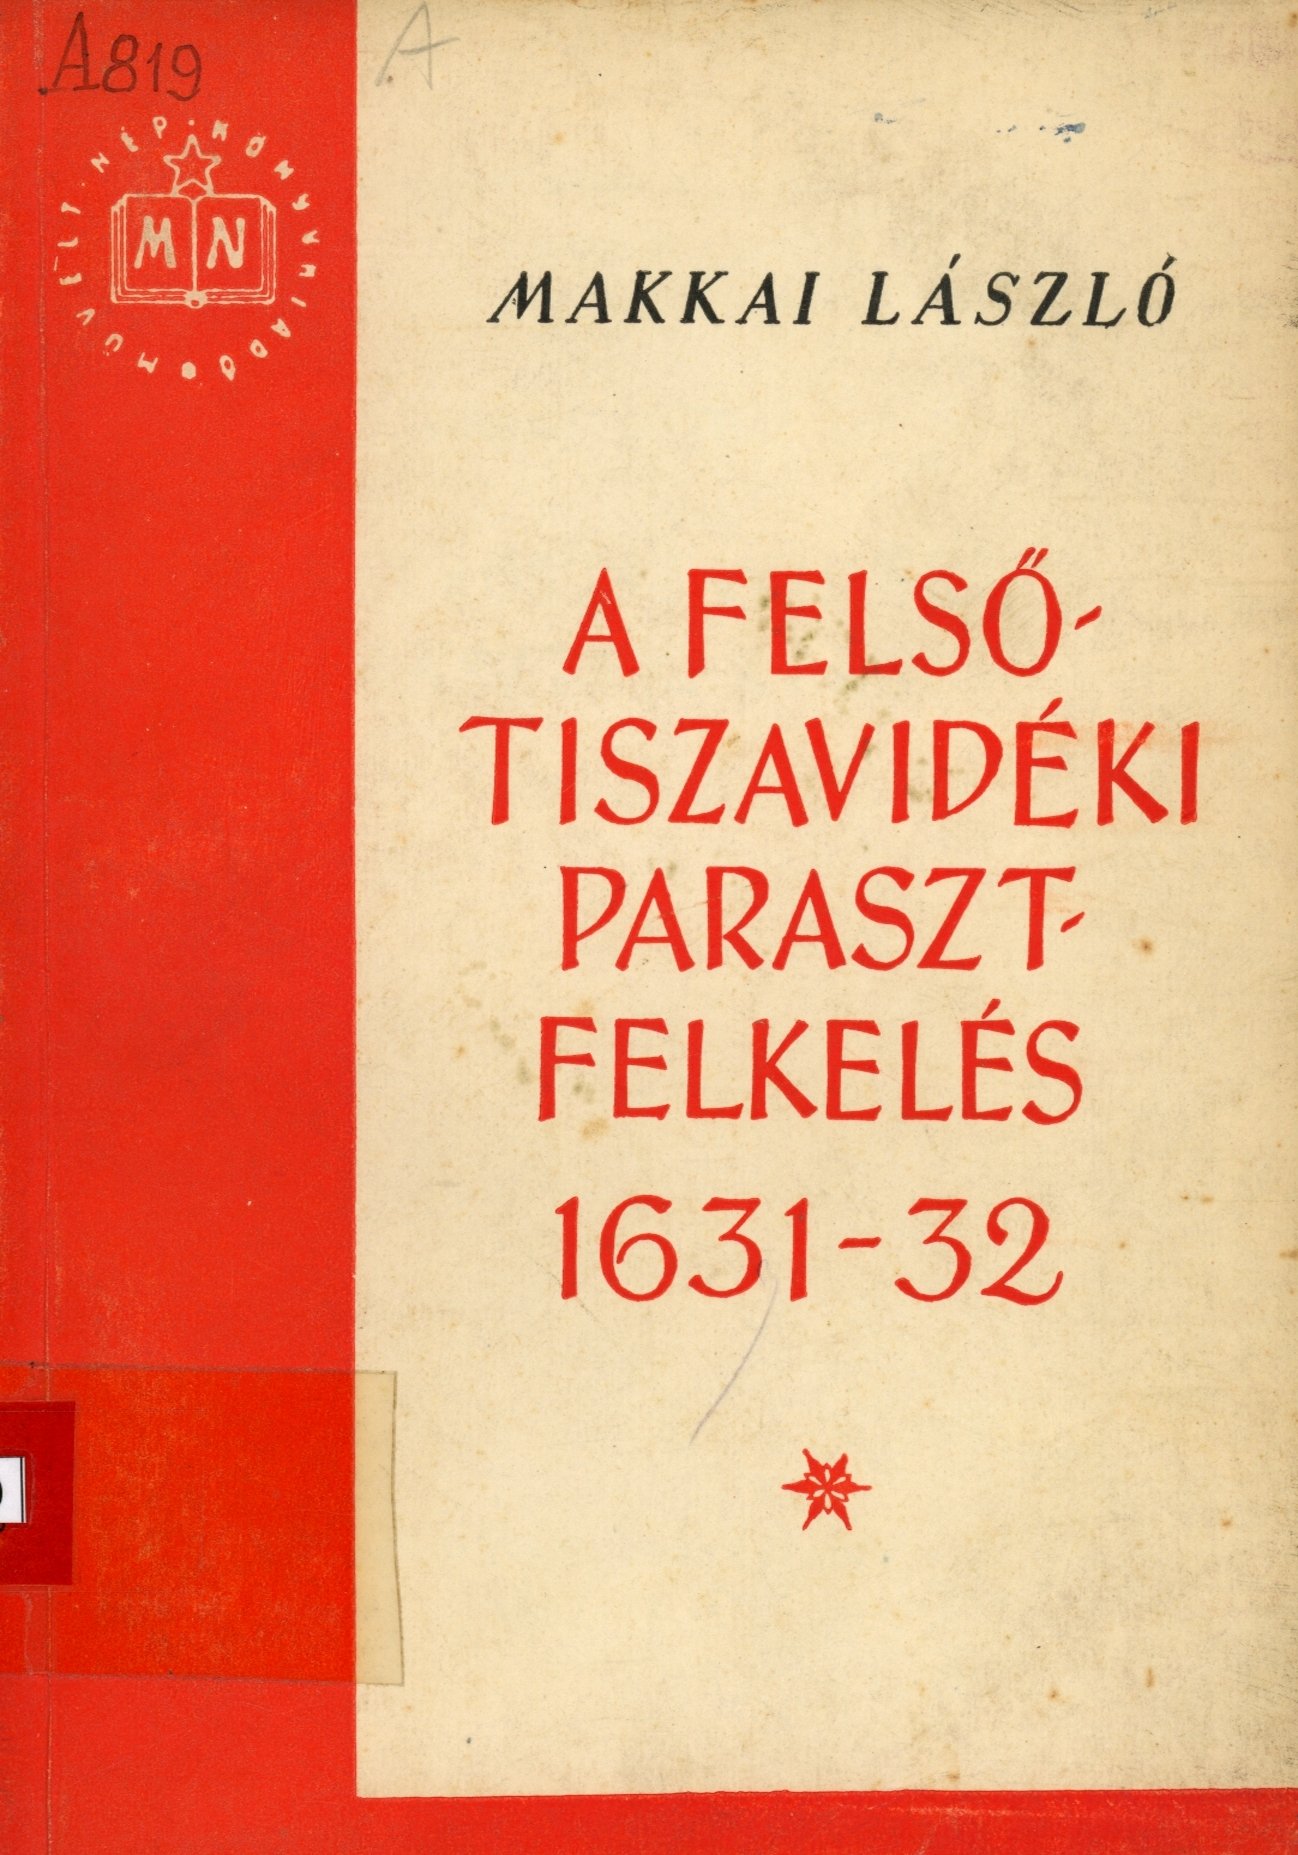 Makkai László (Erkel Ferenc Múzeum és Könyvtár, Gyula CC BY-NC-SA)